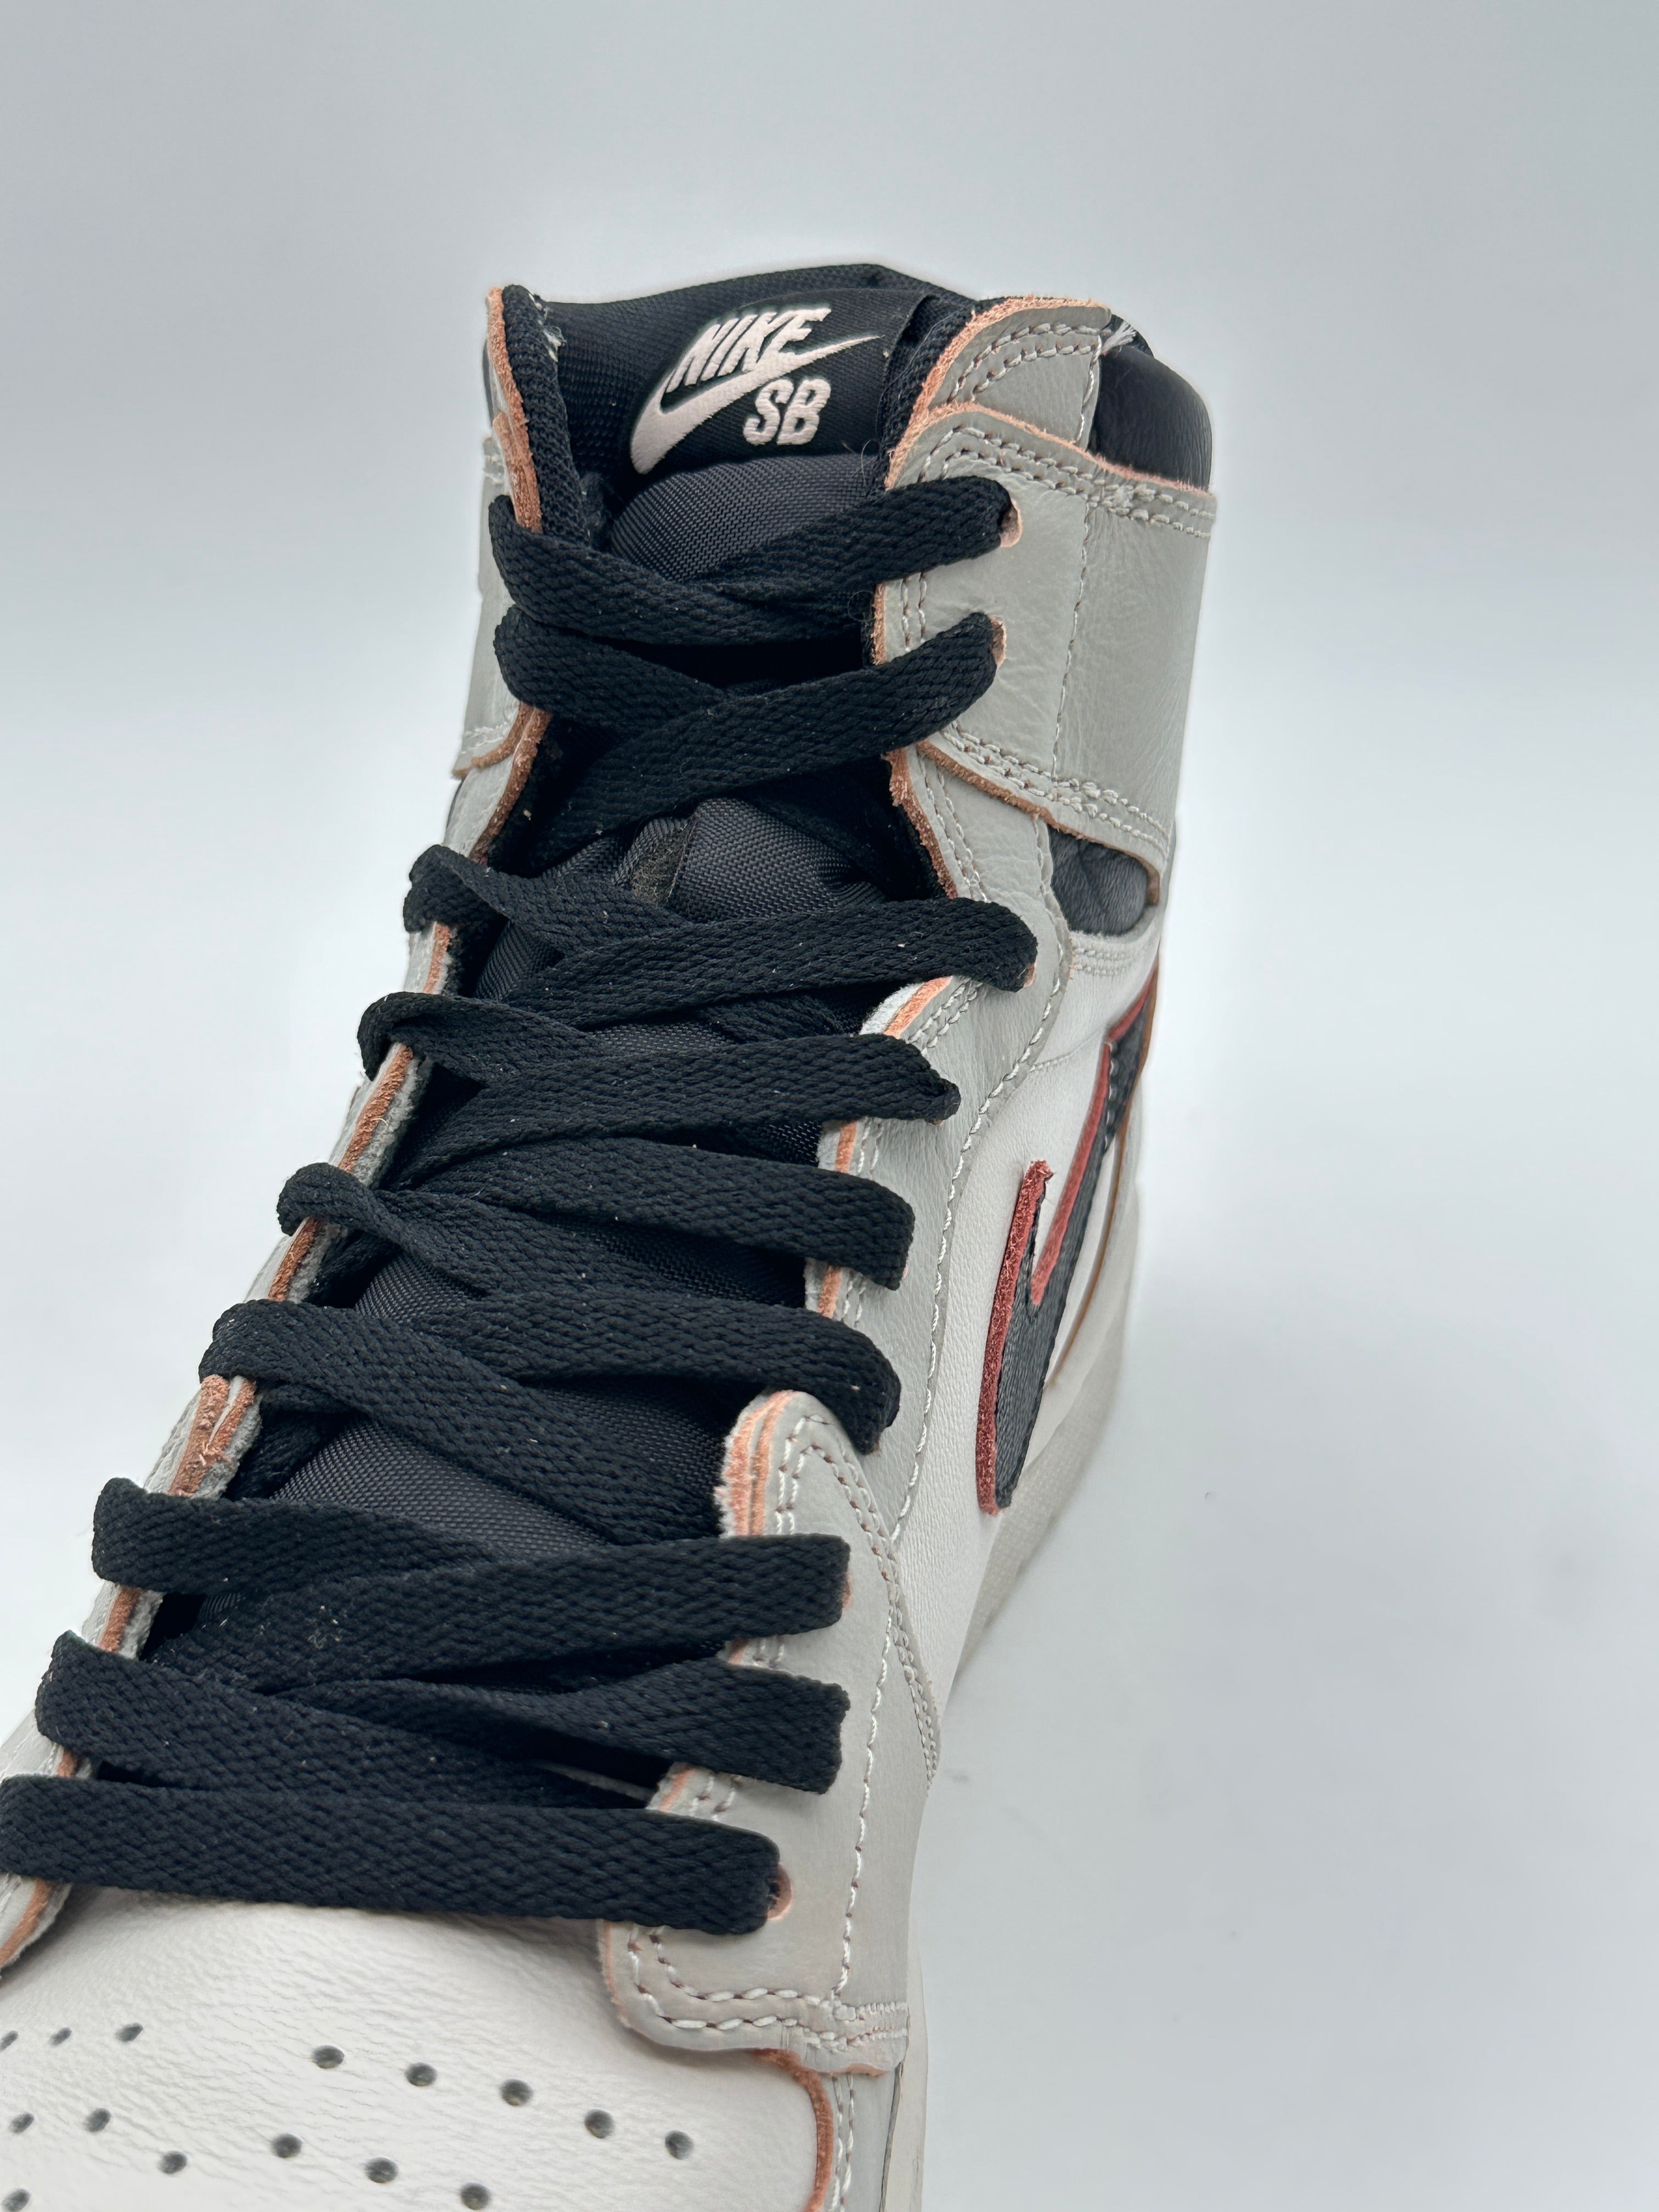 Air Jordan High Sneakers